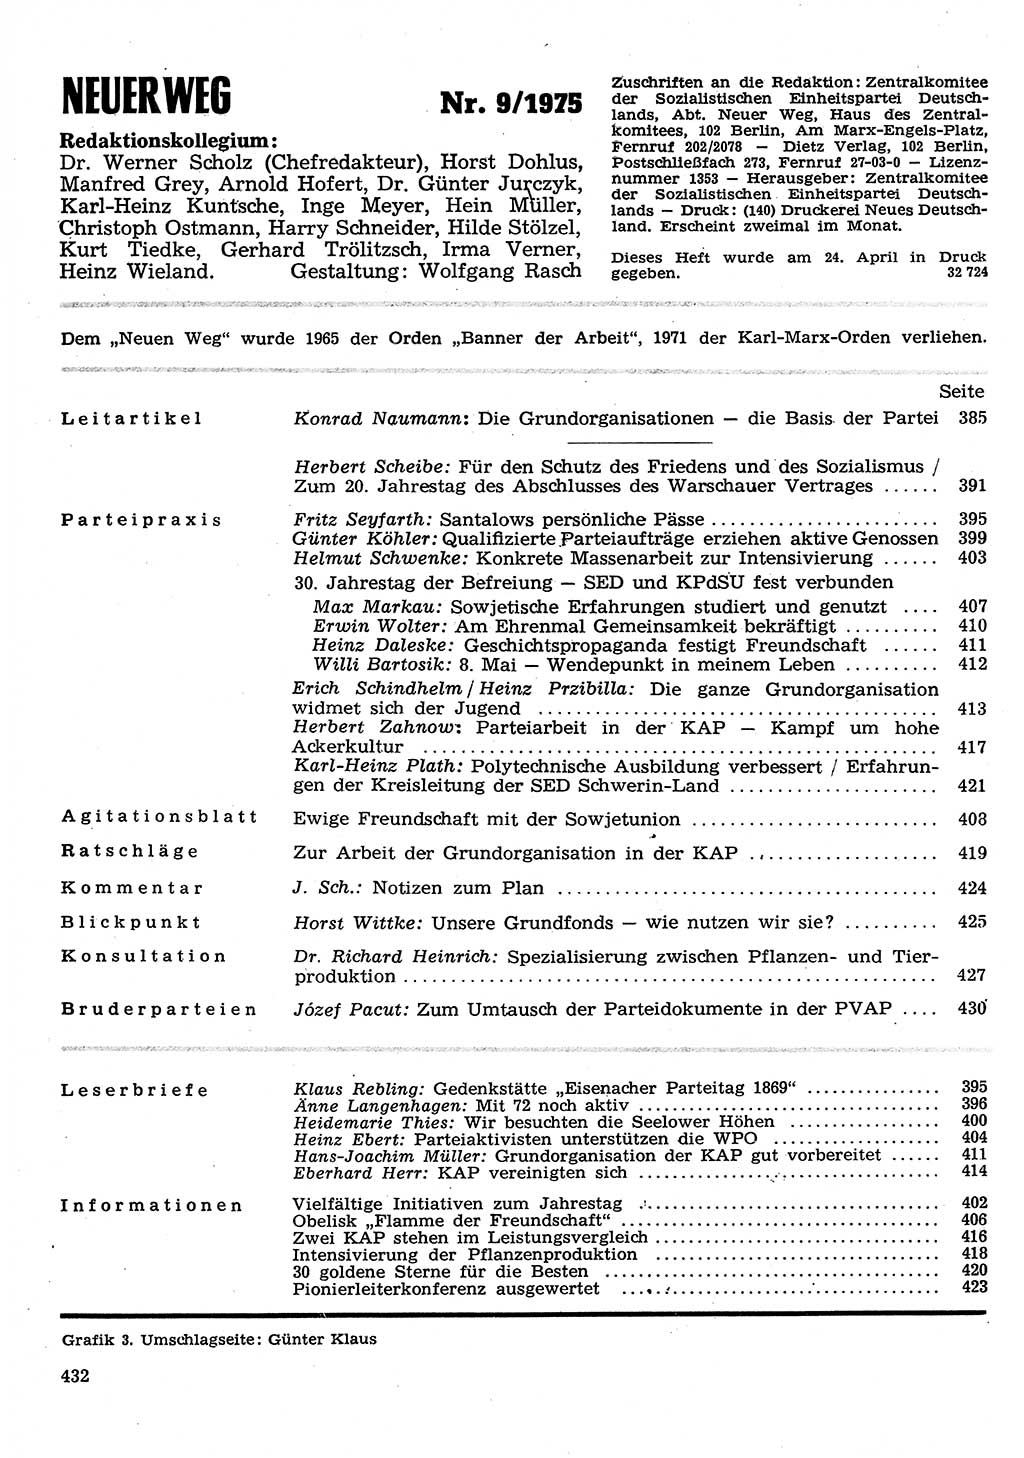 Neuer Weg (NW), Organ des Zentralkomitees (ZK) der SED (Sozialistische Einheitspartei Deutschlands) für Fragen des Parteilebens, 30. Jahrgang [Deutsche Demokratische Republik (DDR)] 1975, Seite 432 (NW ZK SED DDR 1975, S. 432)